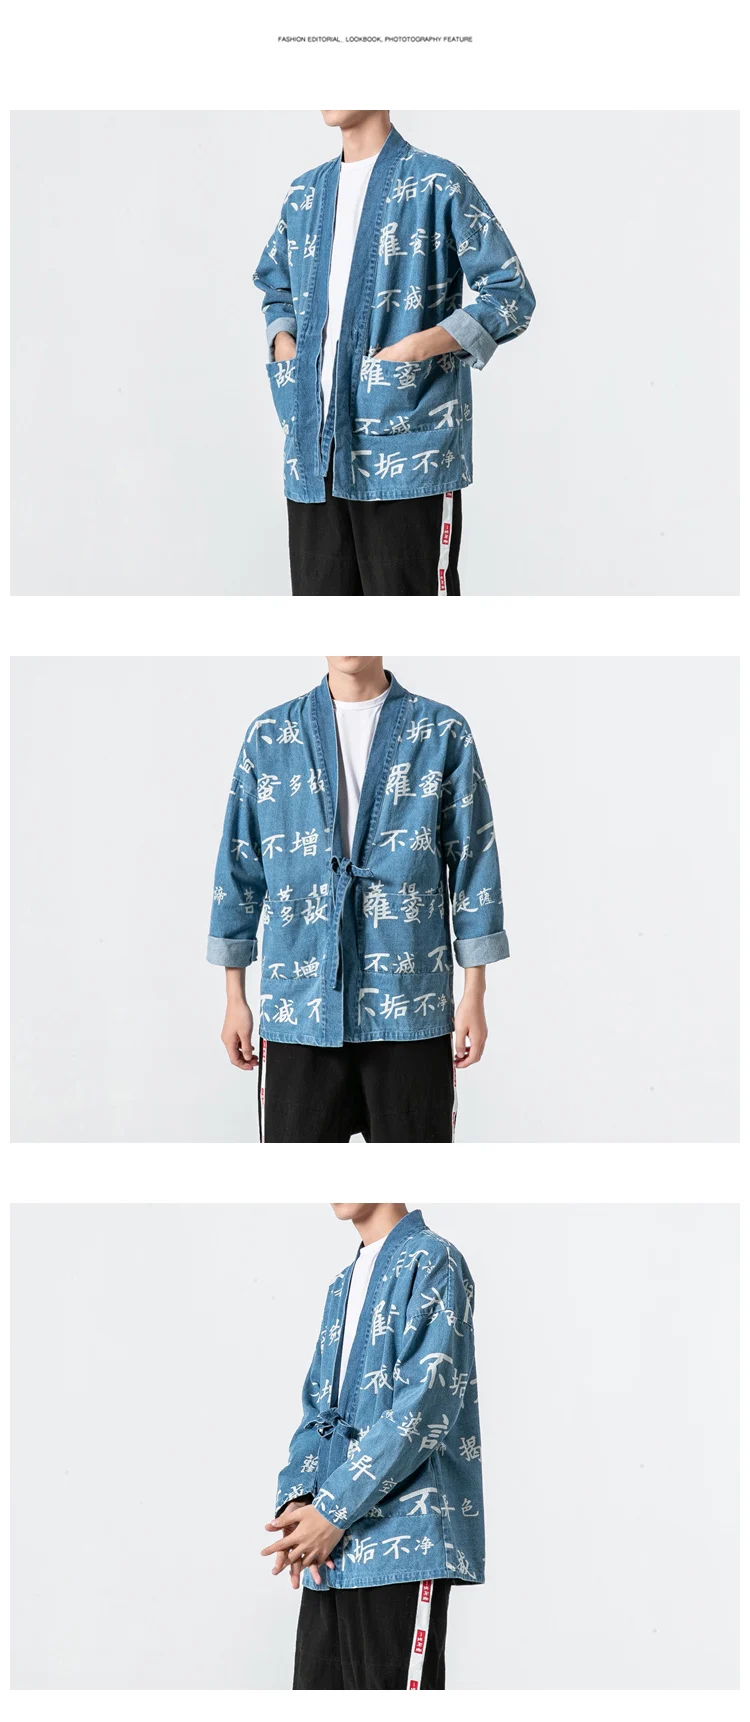 Sinicism магазин для мужчин Haraujuku кимоно кардиган 2019 s японский ремень для верхней одежды рубашки для мальчиков мужской хип хоп моды Корейский